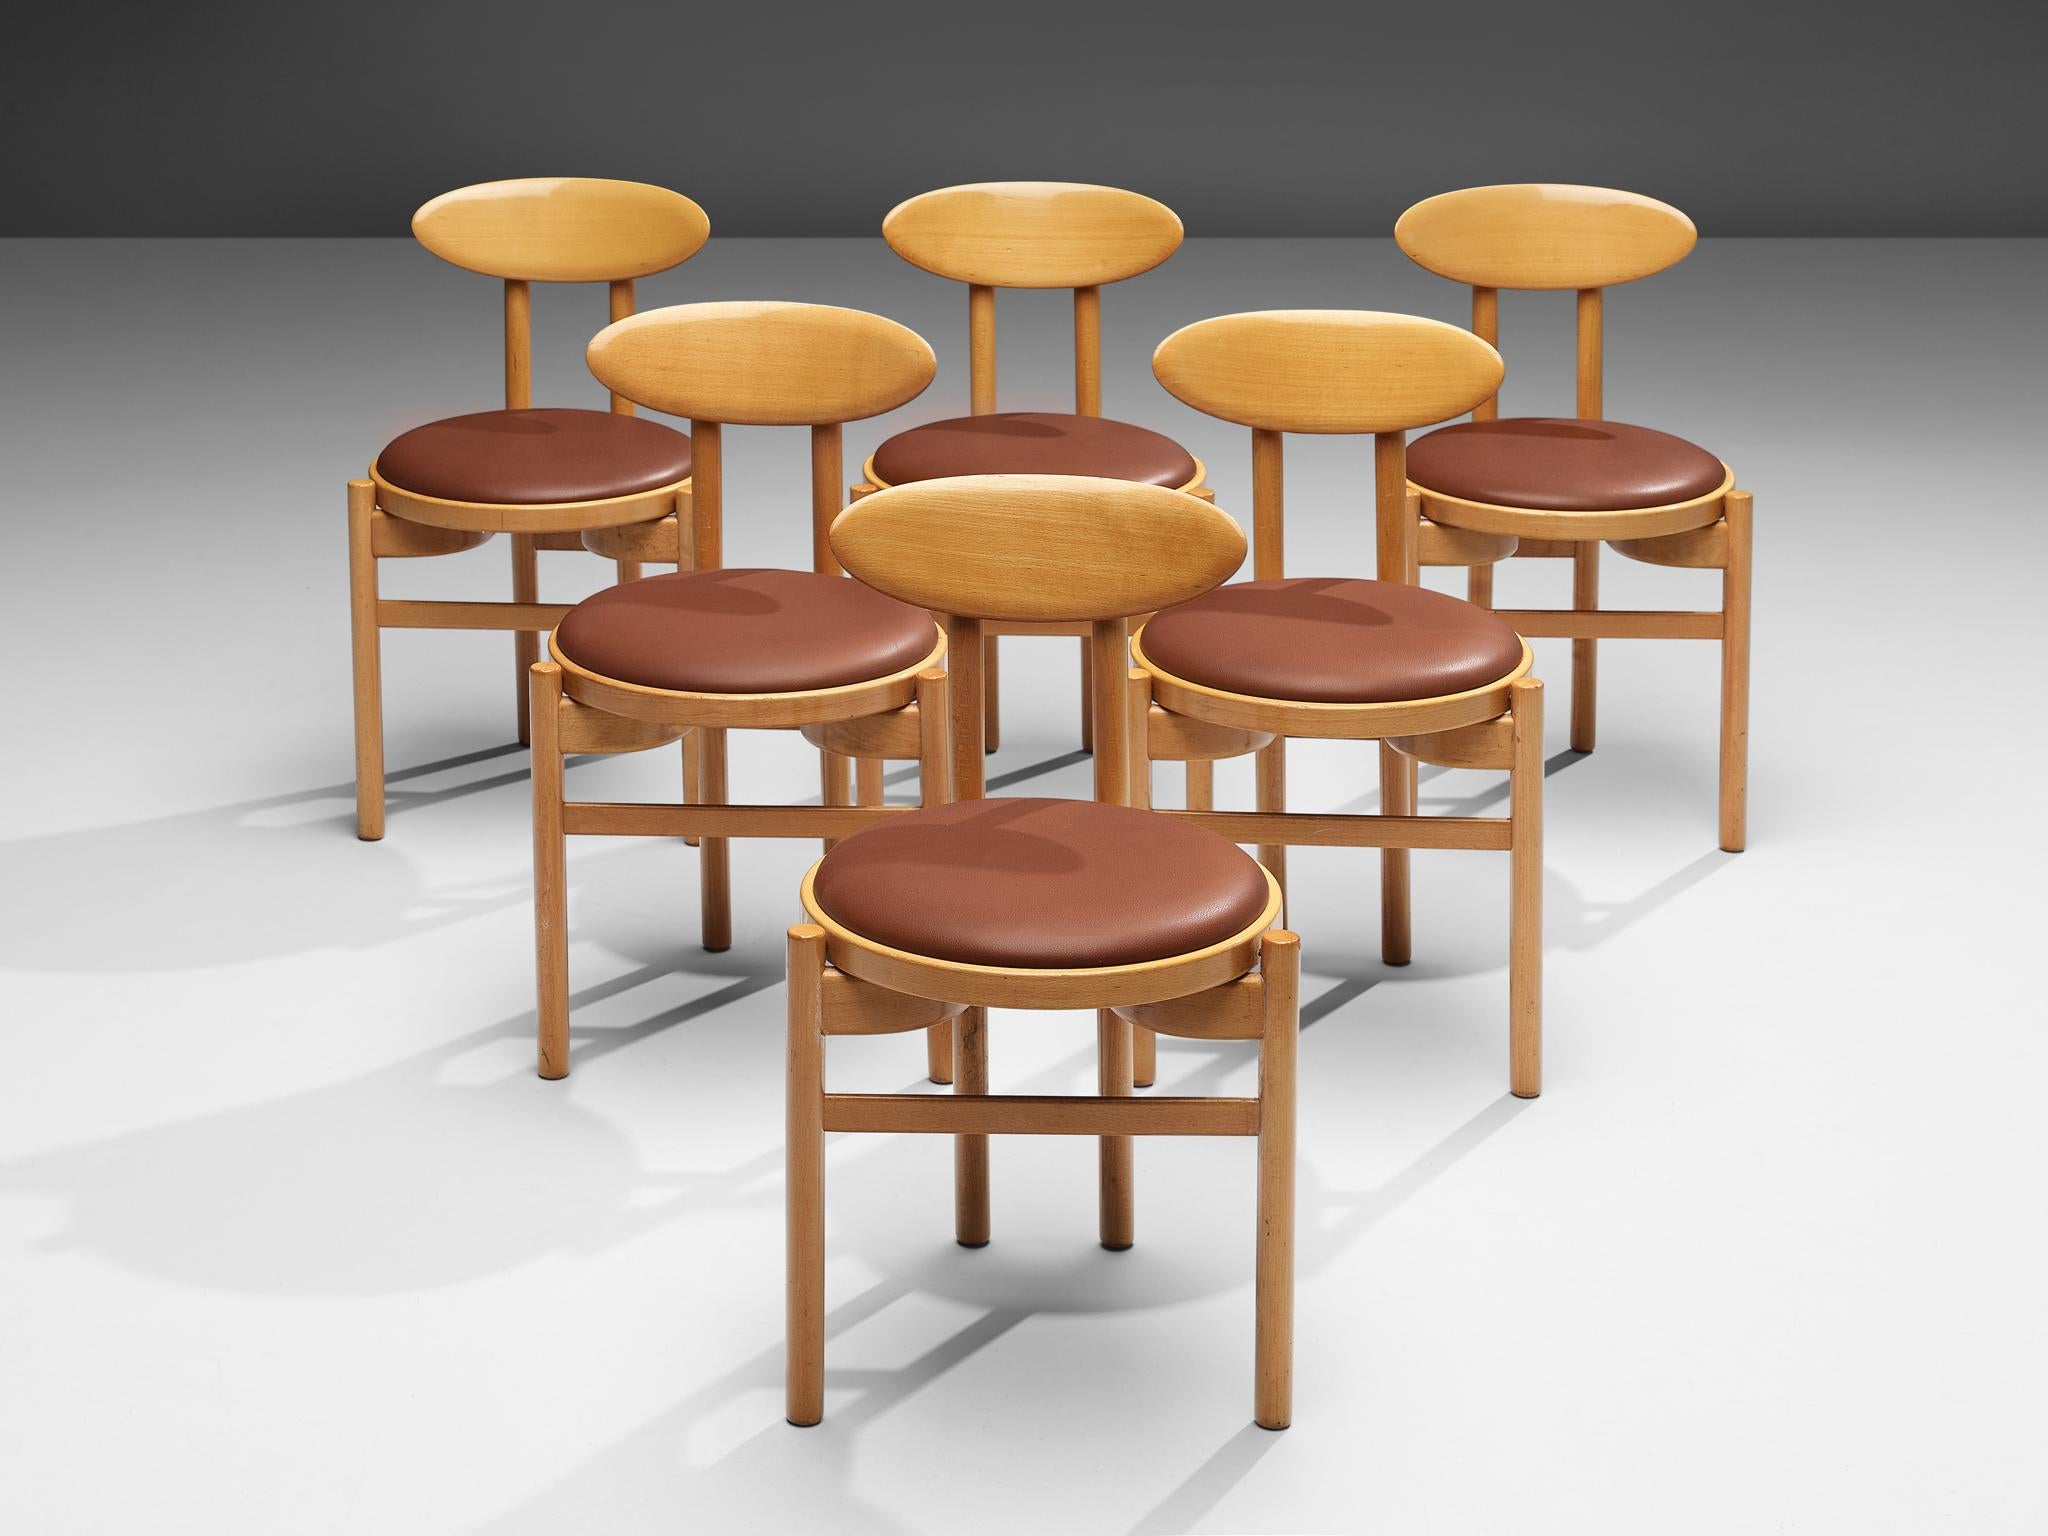 Pozzi, Satz von sechs Esszimmerstühlen, gebeizte Buche, Kunstleder, Italien, 1970er Jahre

Mit ihren runden Sitzflächen und ovalen Rückenlehnen wirken diese Esszimmerstühle des italienischen Herstellers Pozzi dynamisch, fast verspielt. Zwei runde